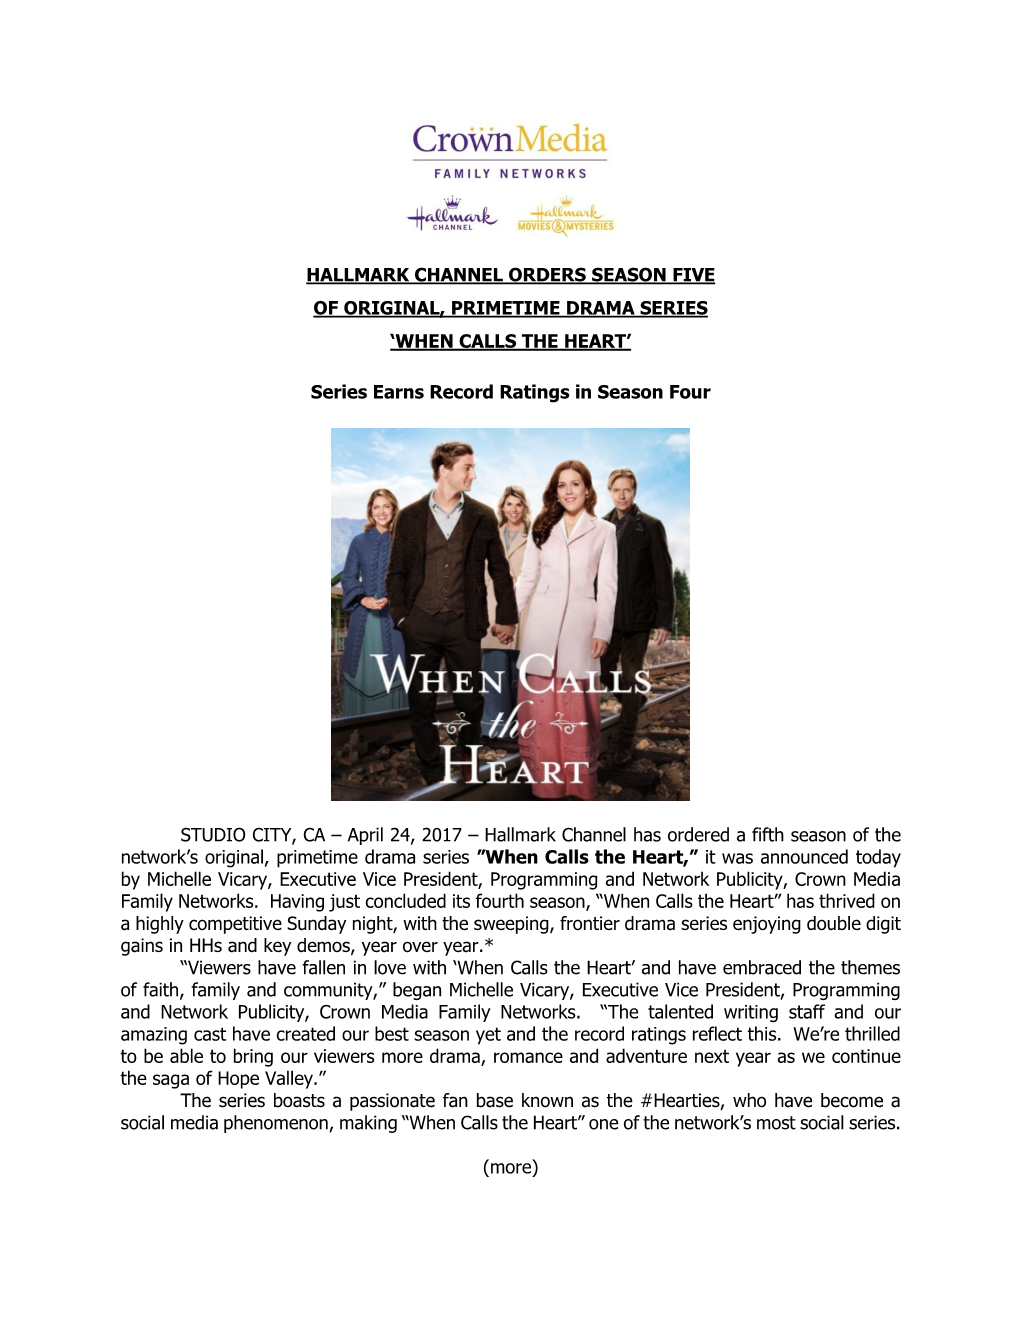 Hallmark Channel Orders Season Five of Original, Primetime Drama Series ‘When Calls the Heart’